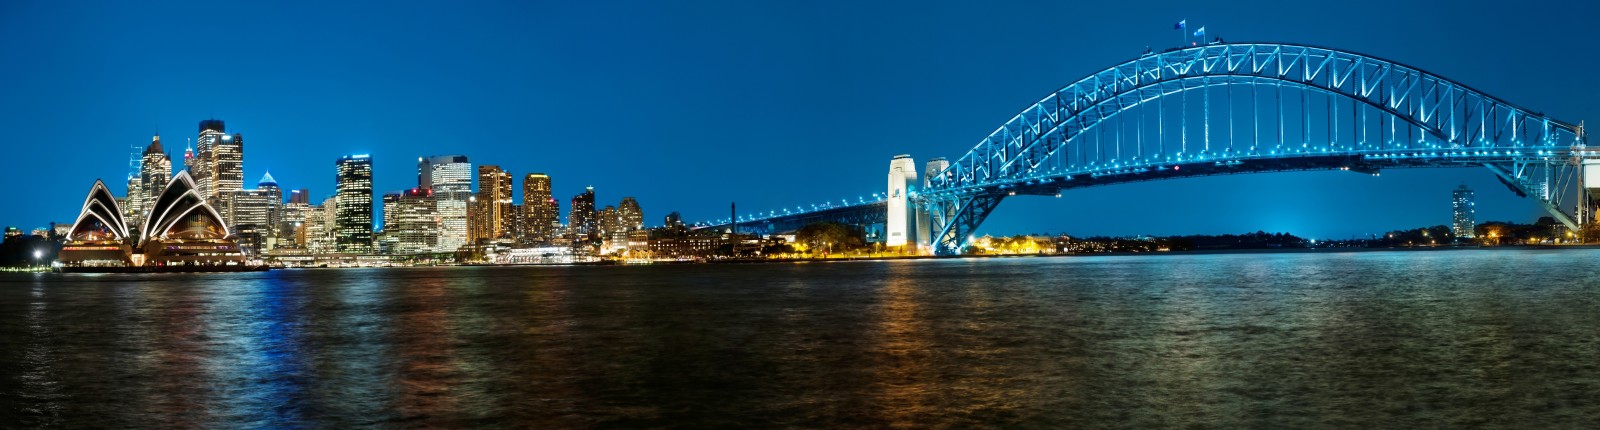 湾, 夜の街, ブリッジ, パノラマ, オーストラリア, シドニー, ハーバーブリッジ, シドニー港